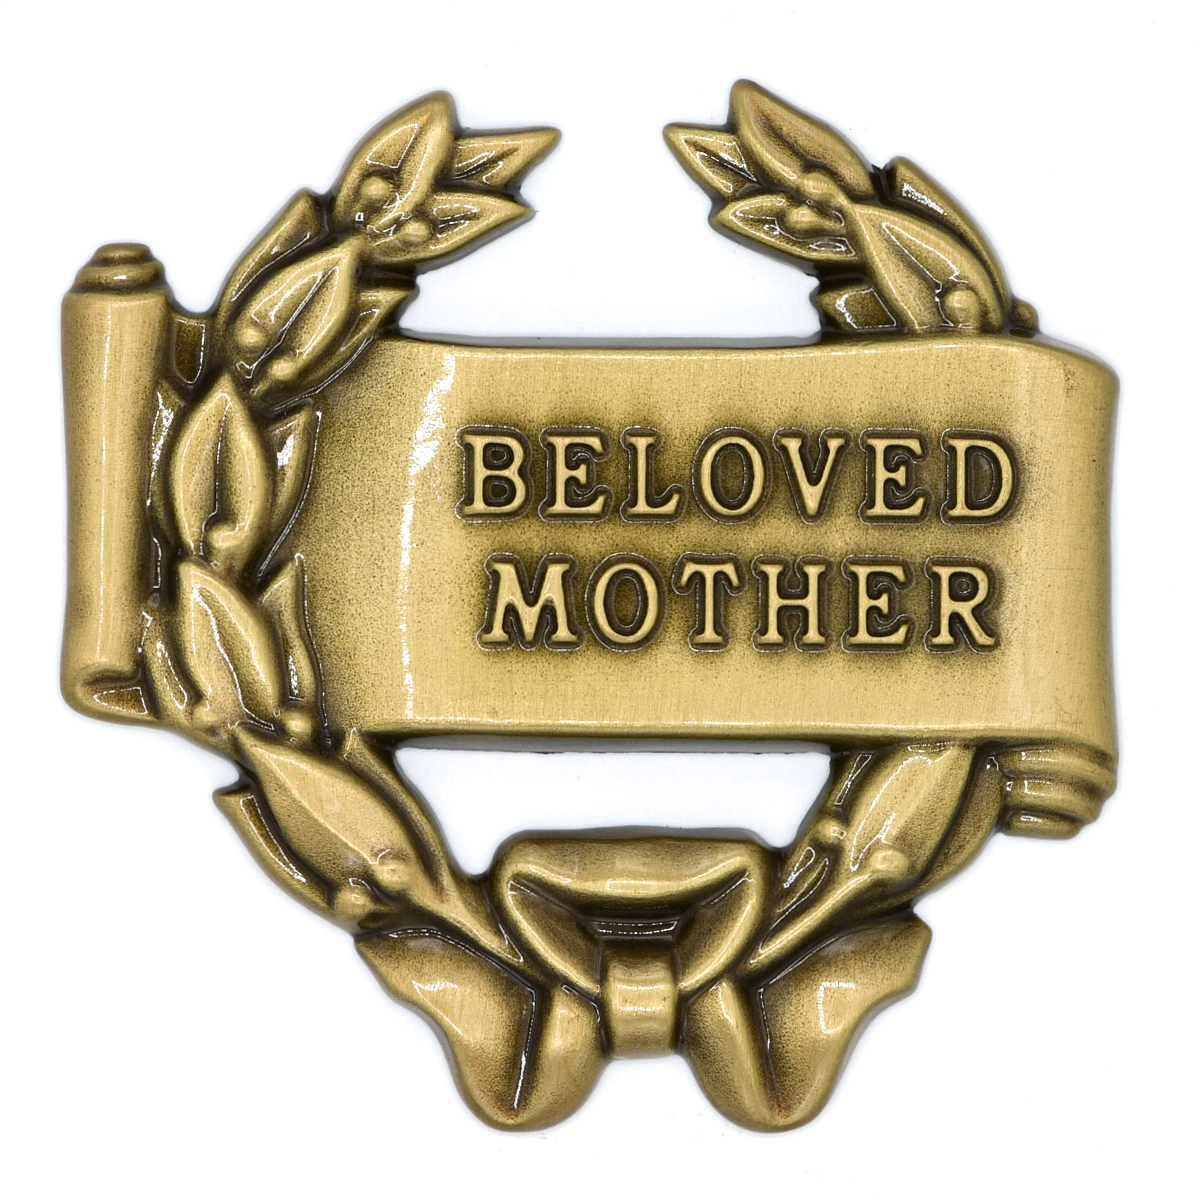 Beloved Mother 3.1 x 3.1″